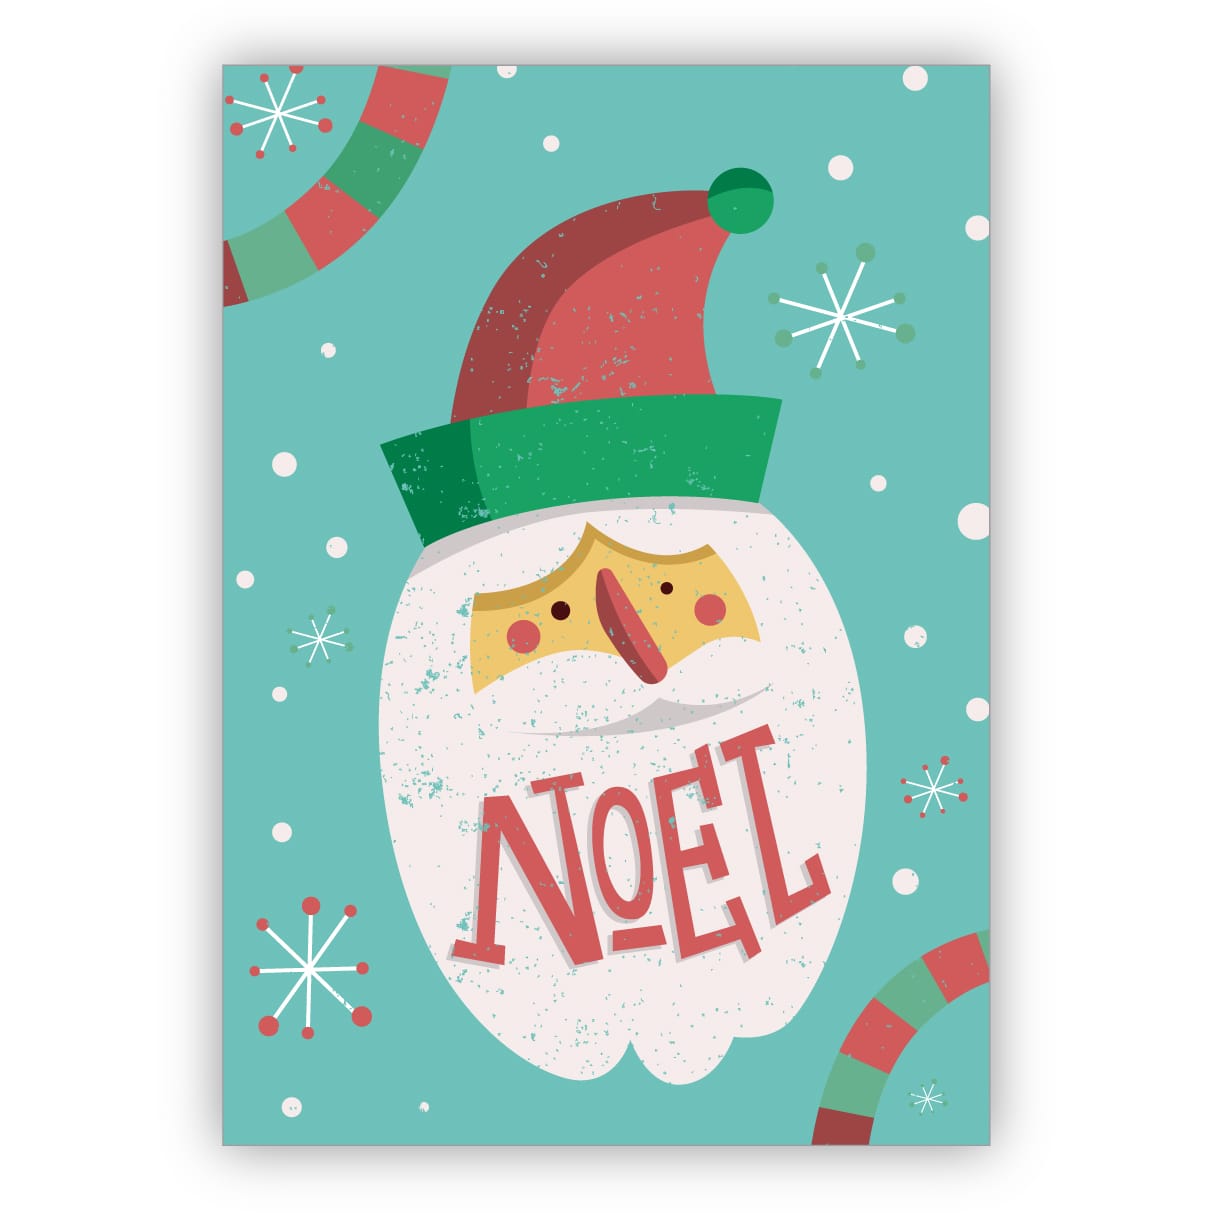 Süße französische Retro Weihnachtskarte mit Weihnachtmann: Noel